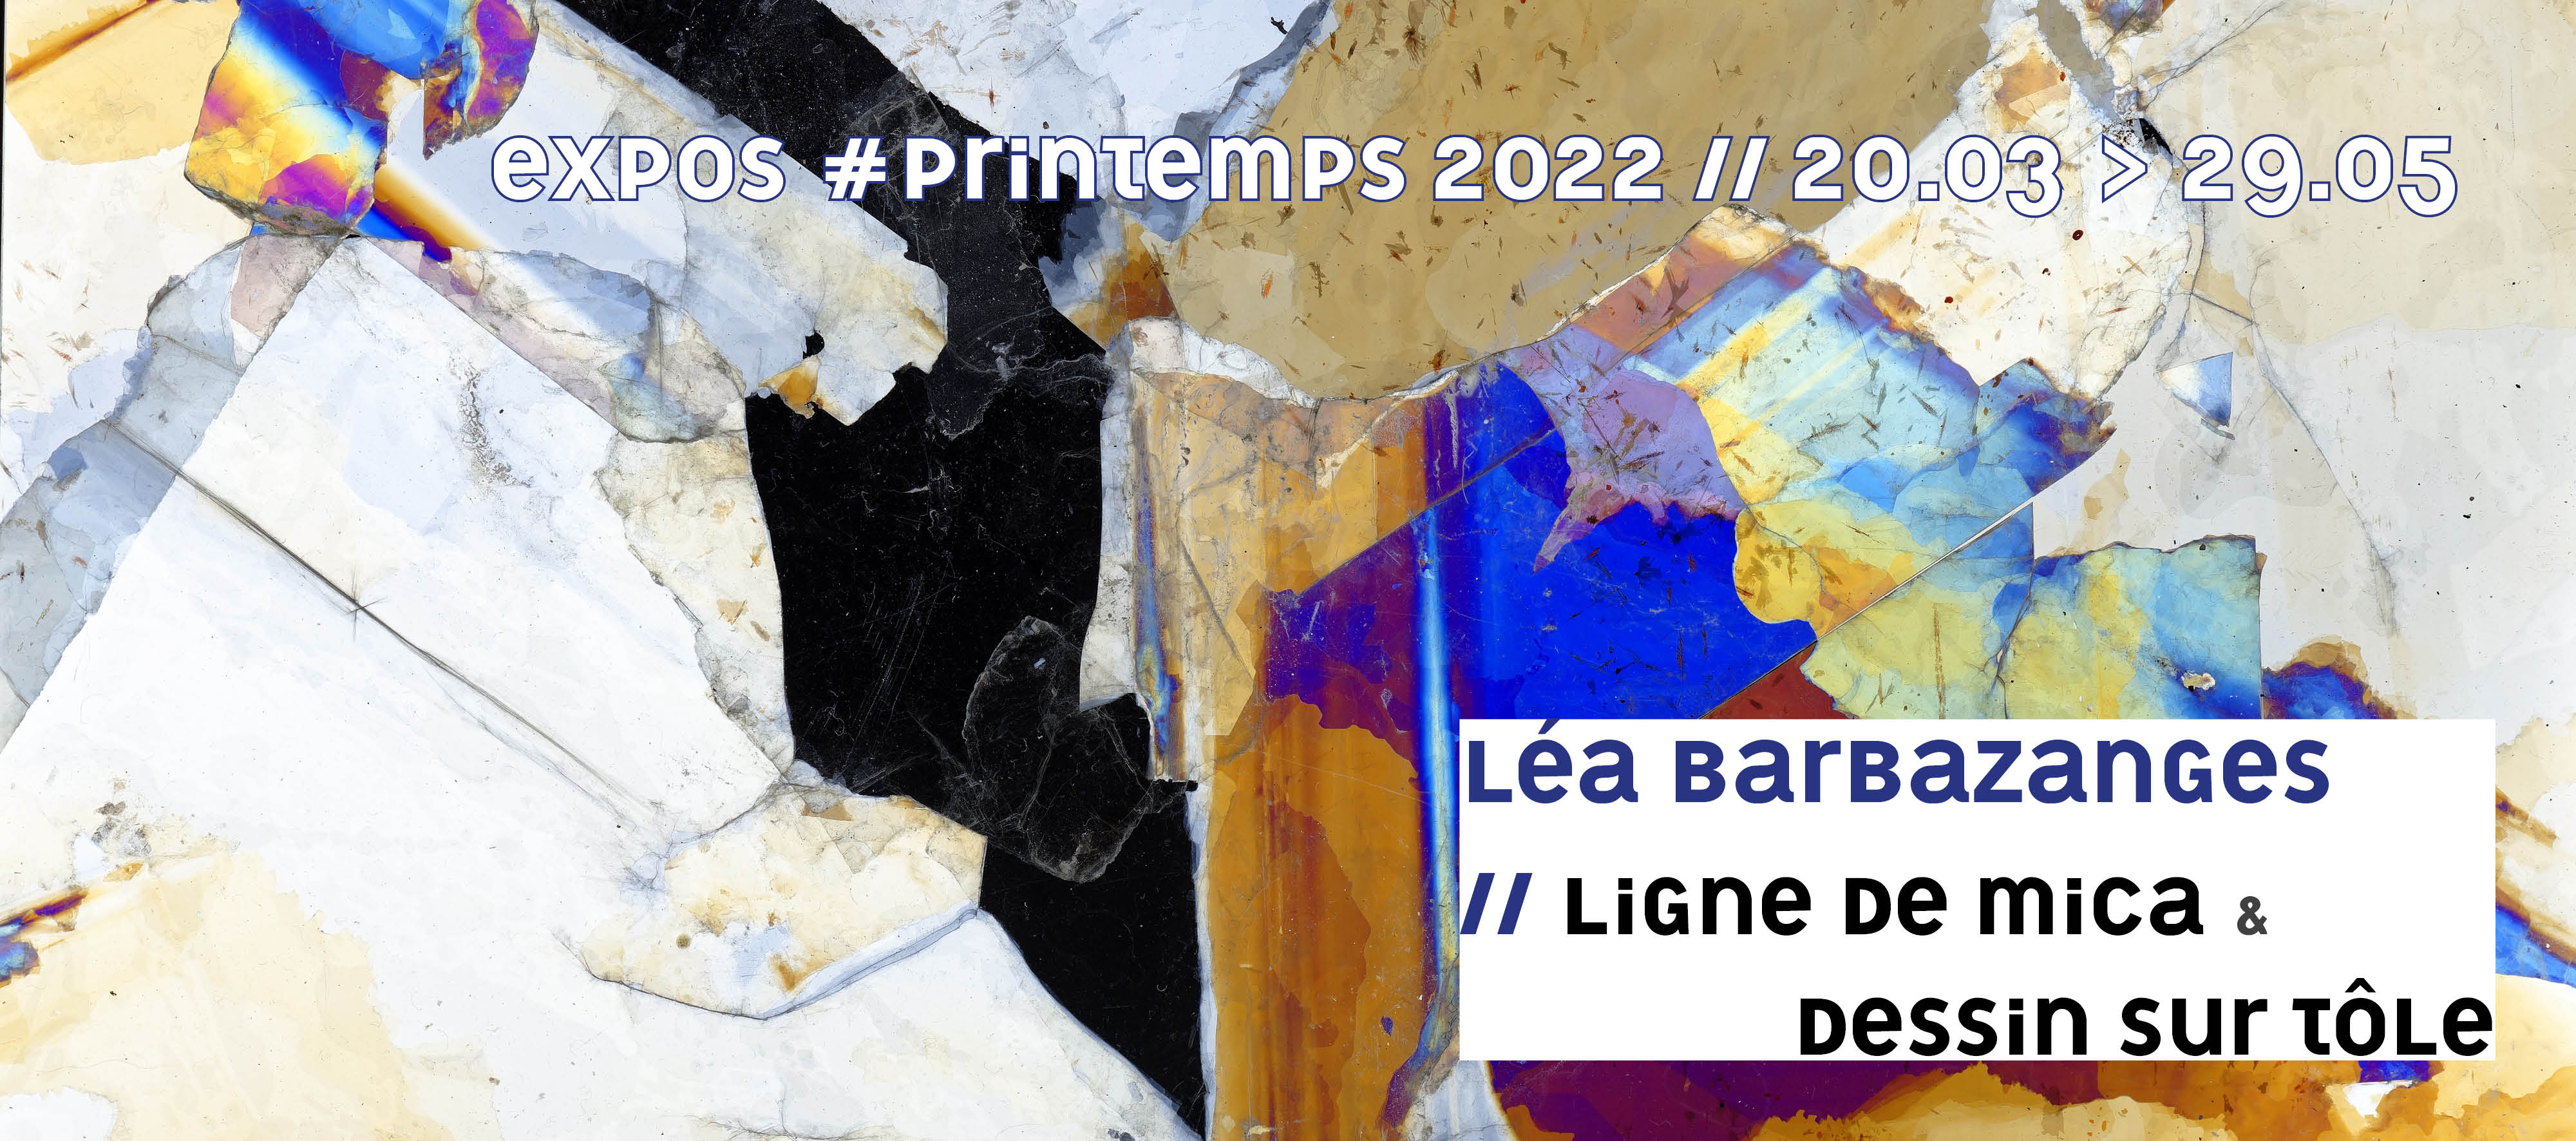 Visuel annonçant l'exposition de Léa Barbazanges au printemps 2022.